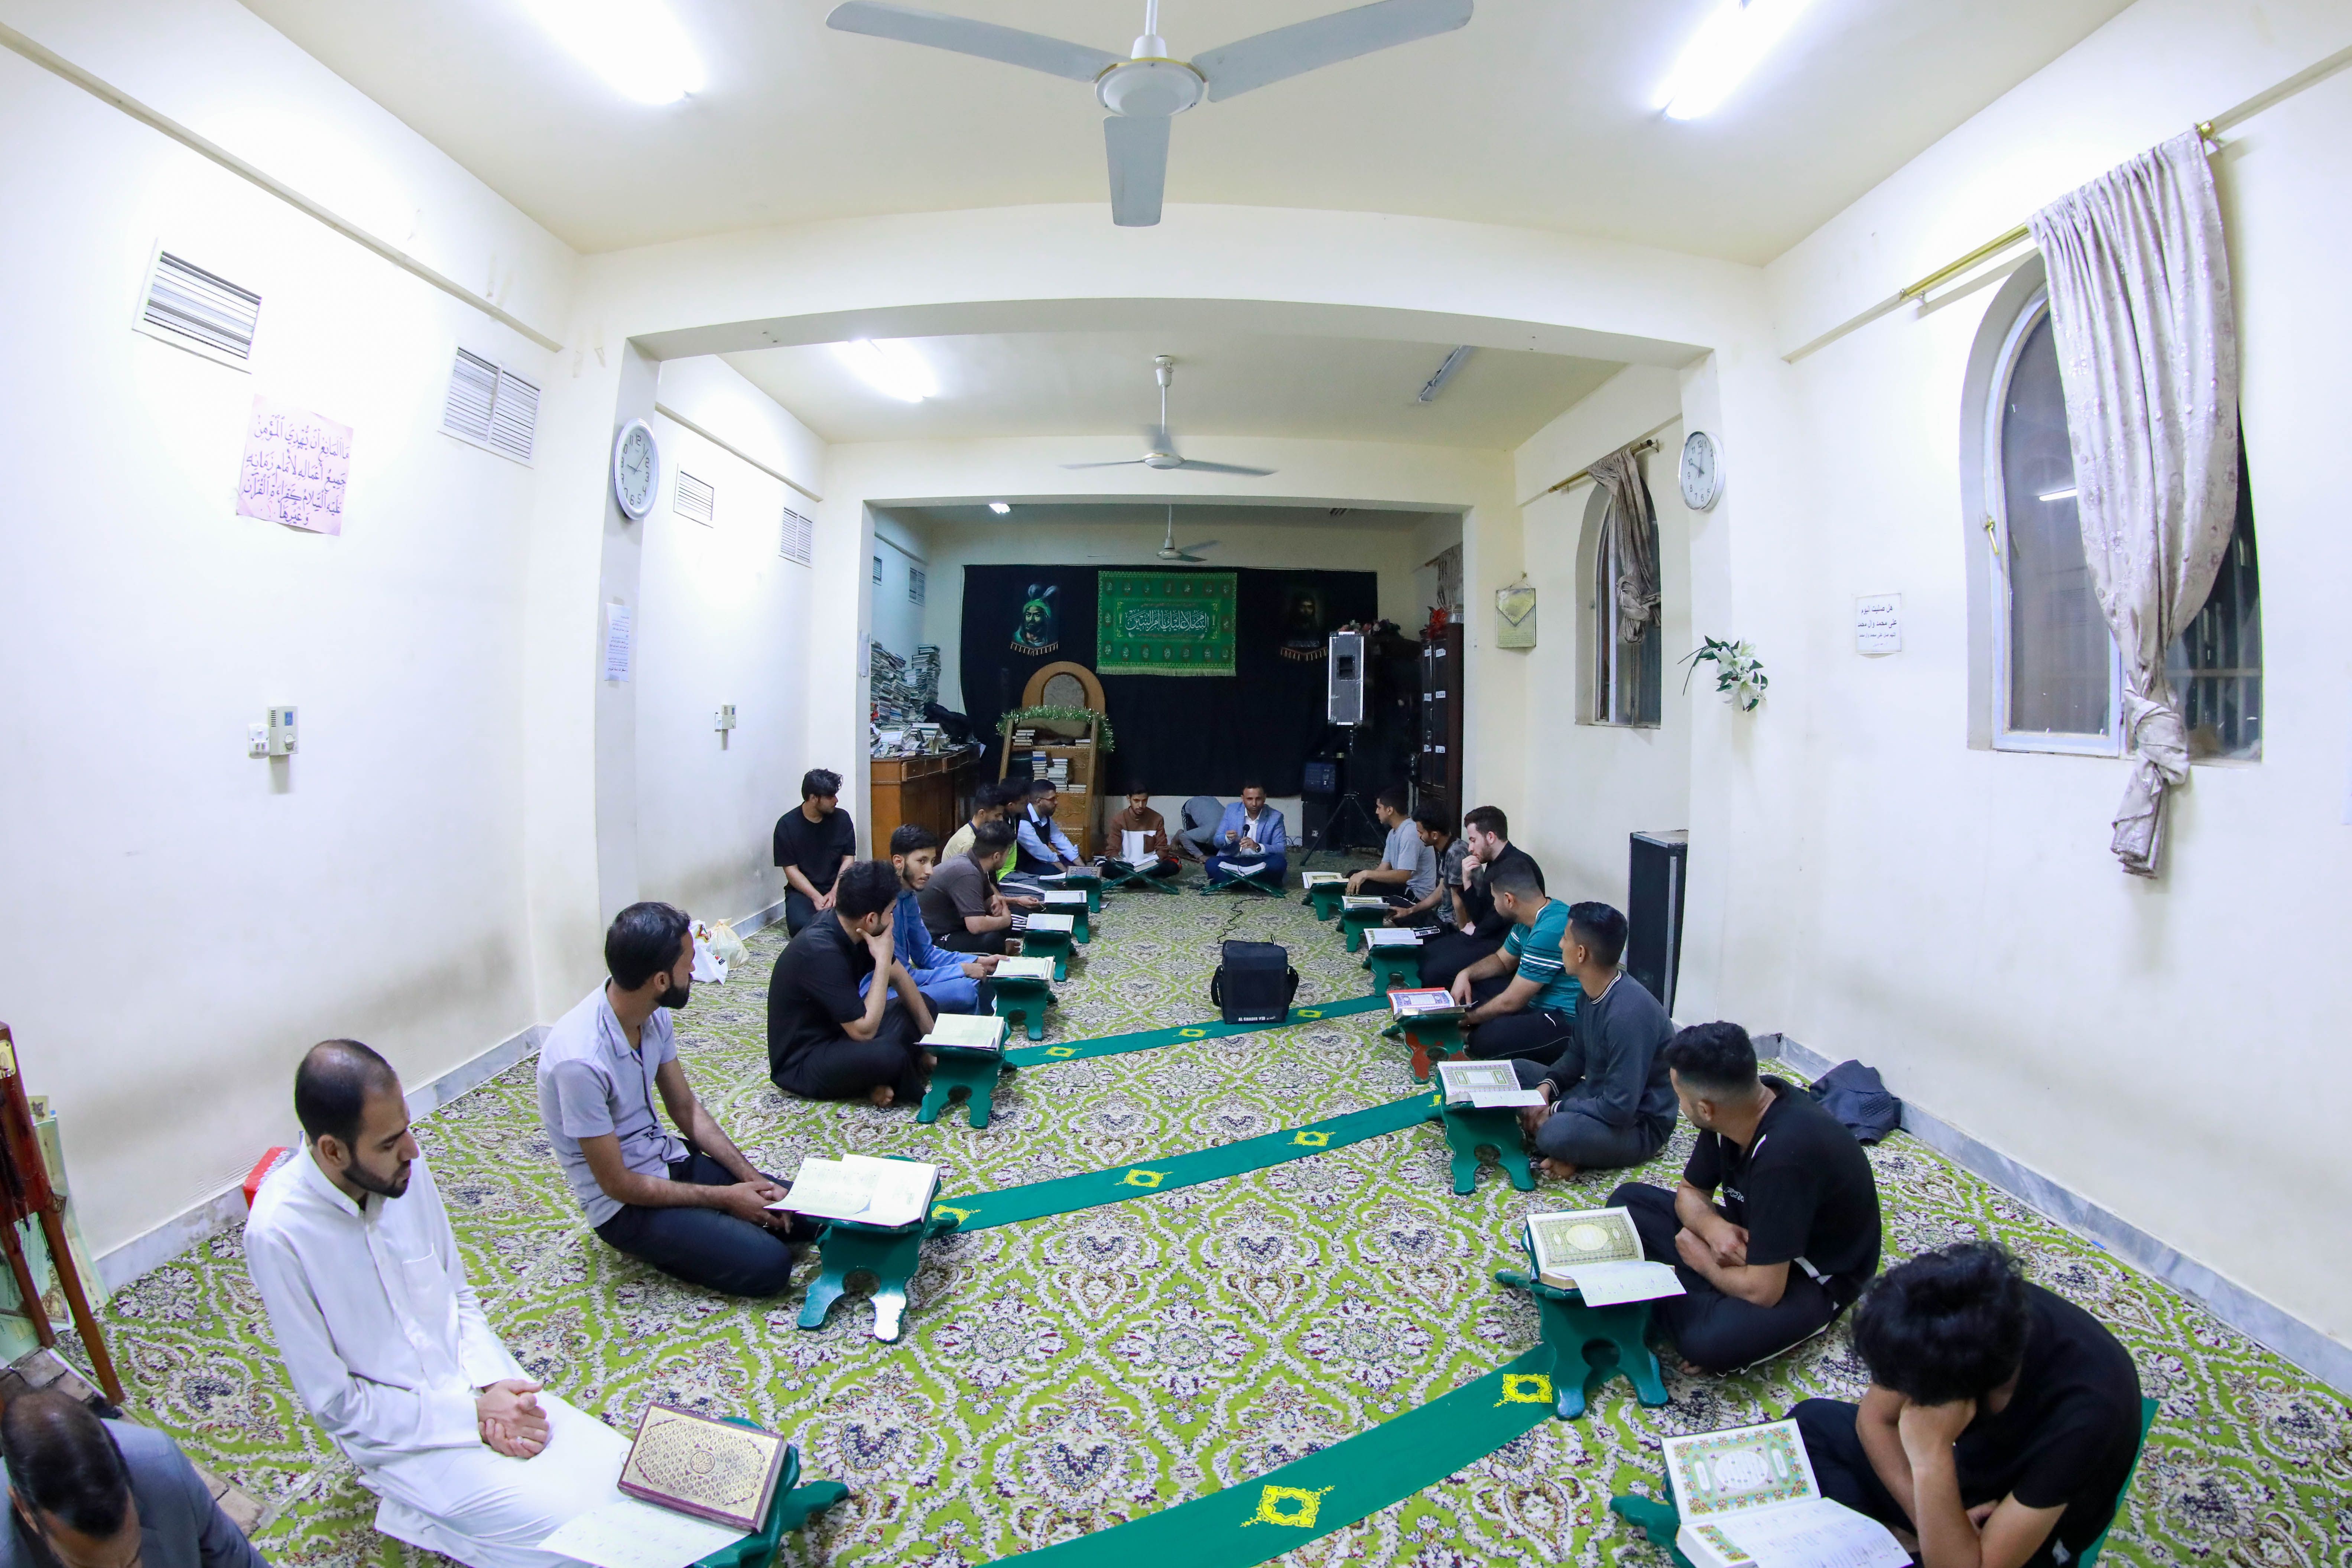 جامعة كربلاء تحتضن أمسية قرآنية في أقسامها الداخلية ضمن المشروع القرآني في الجامعات